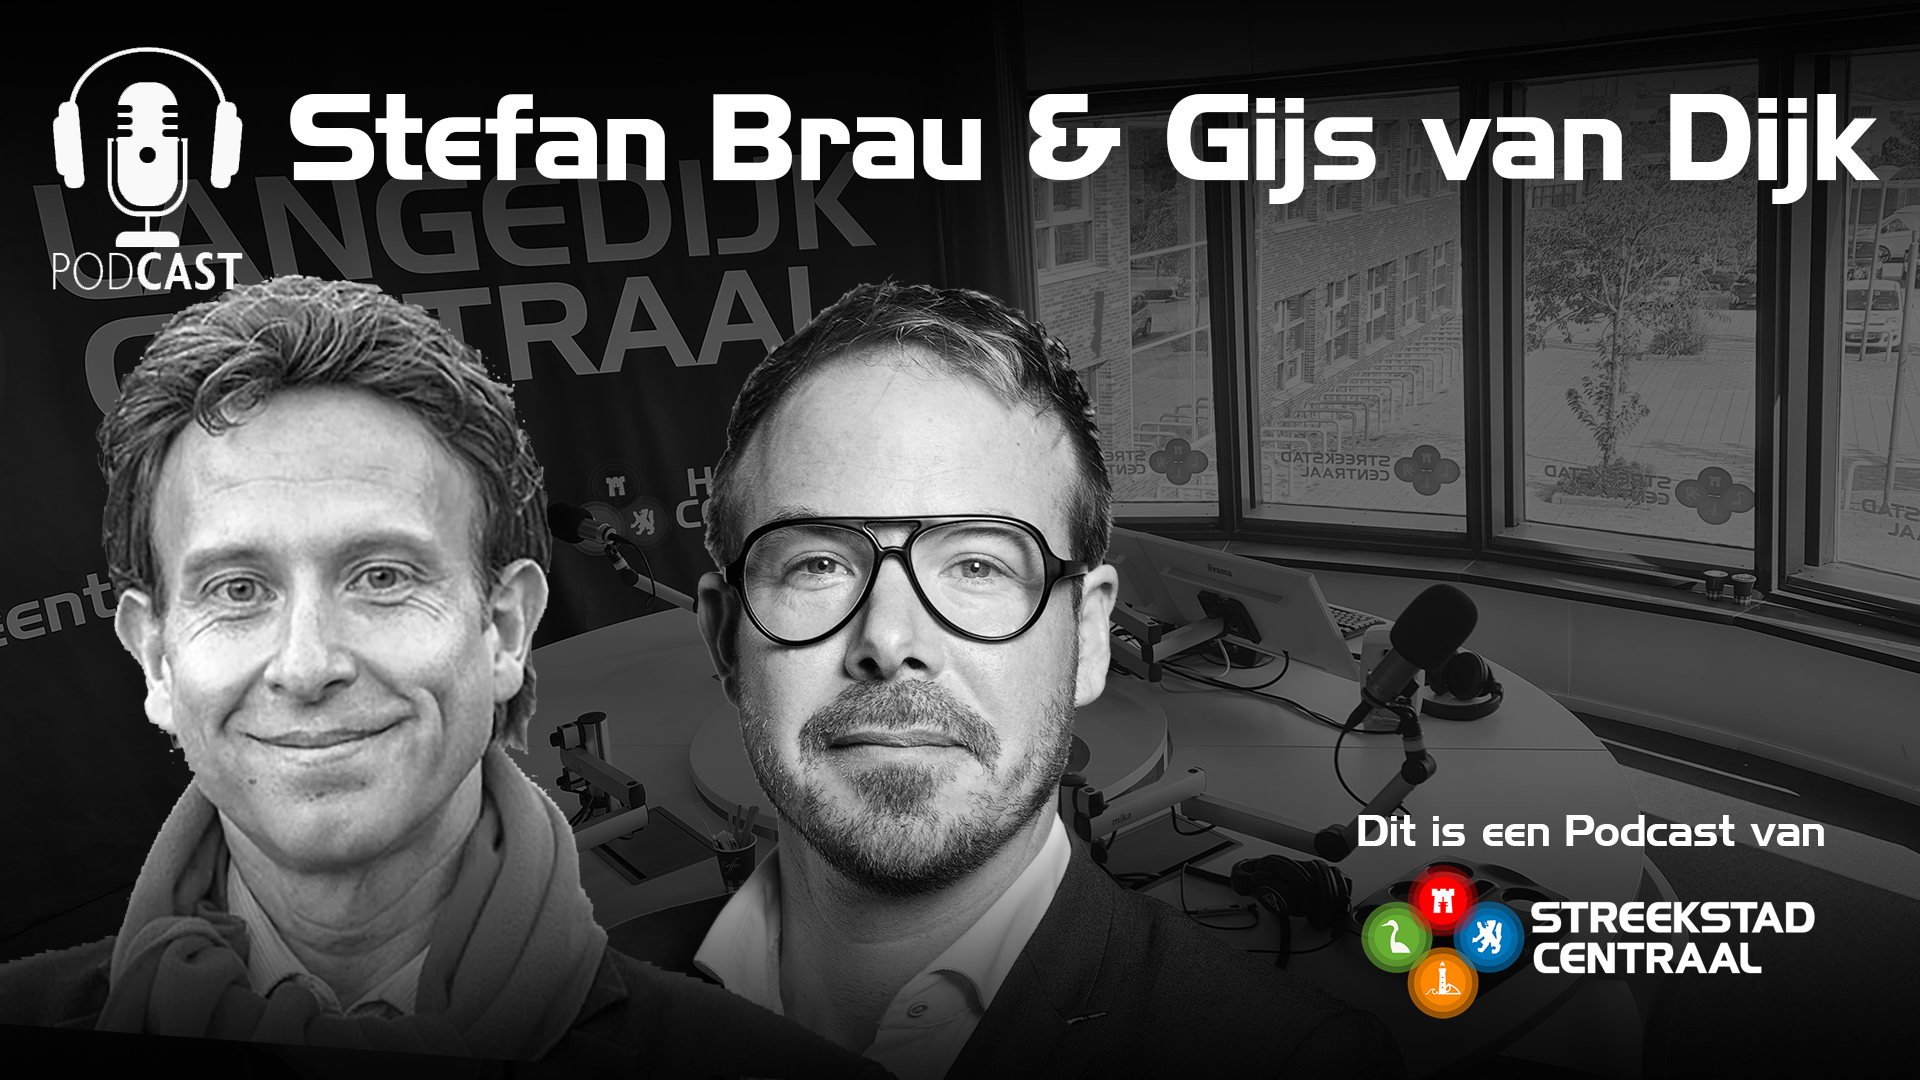 Podcast met Tweede Kamerlid PvdA Gijs van Dijk en lokale fractievoorzitter Stefan Brau